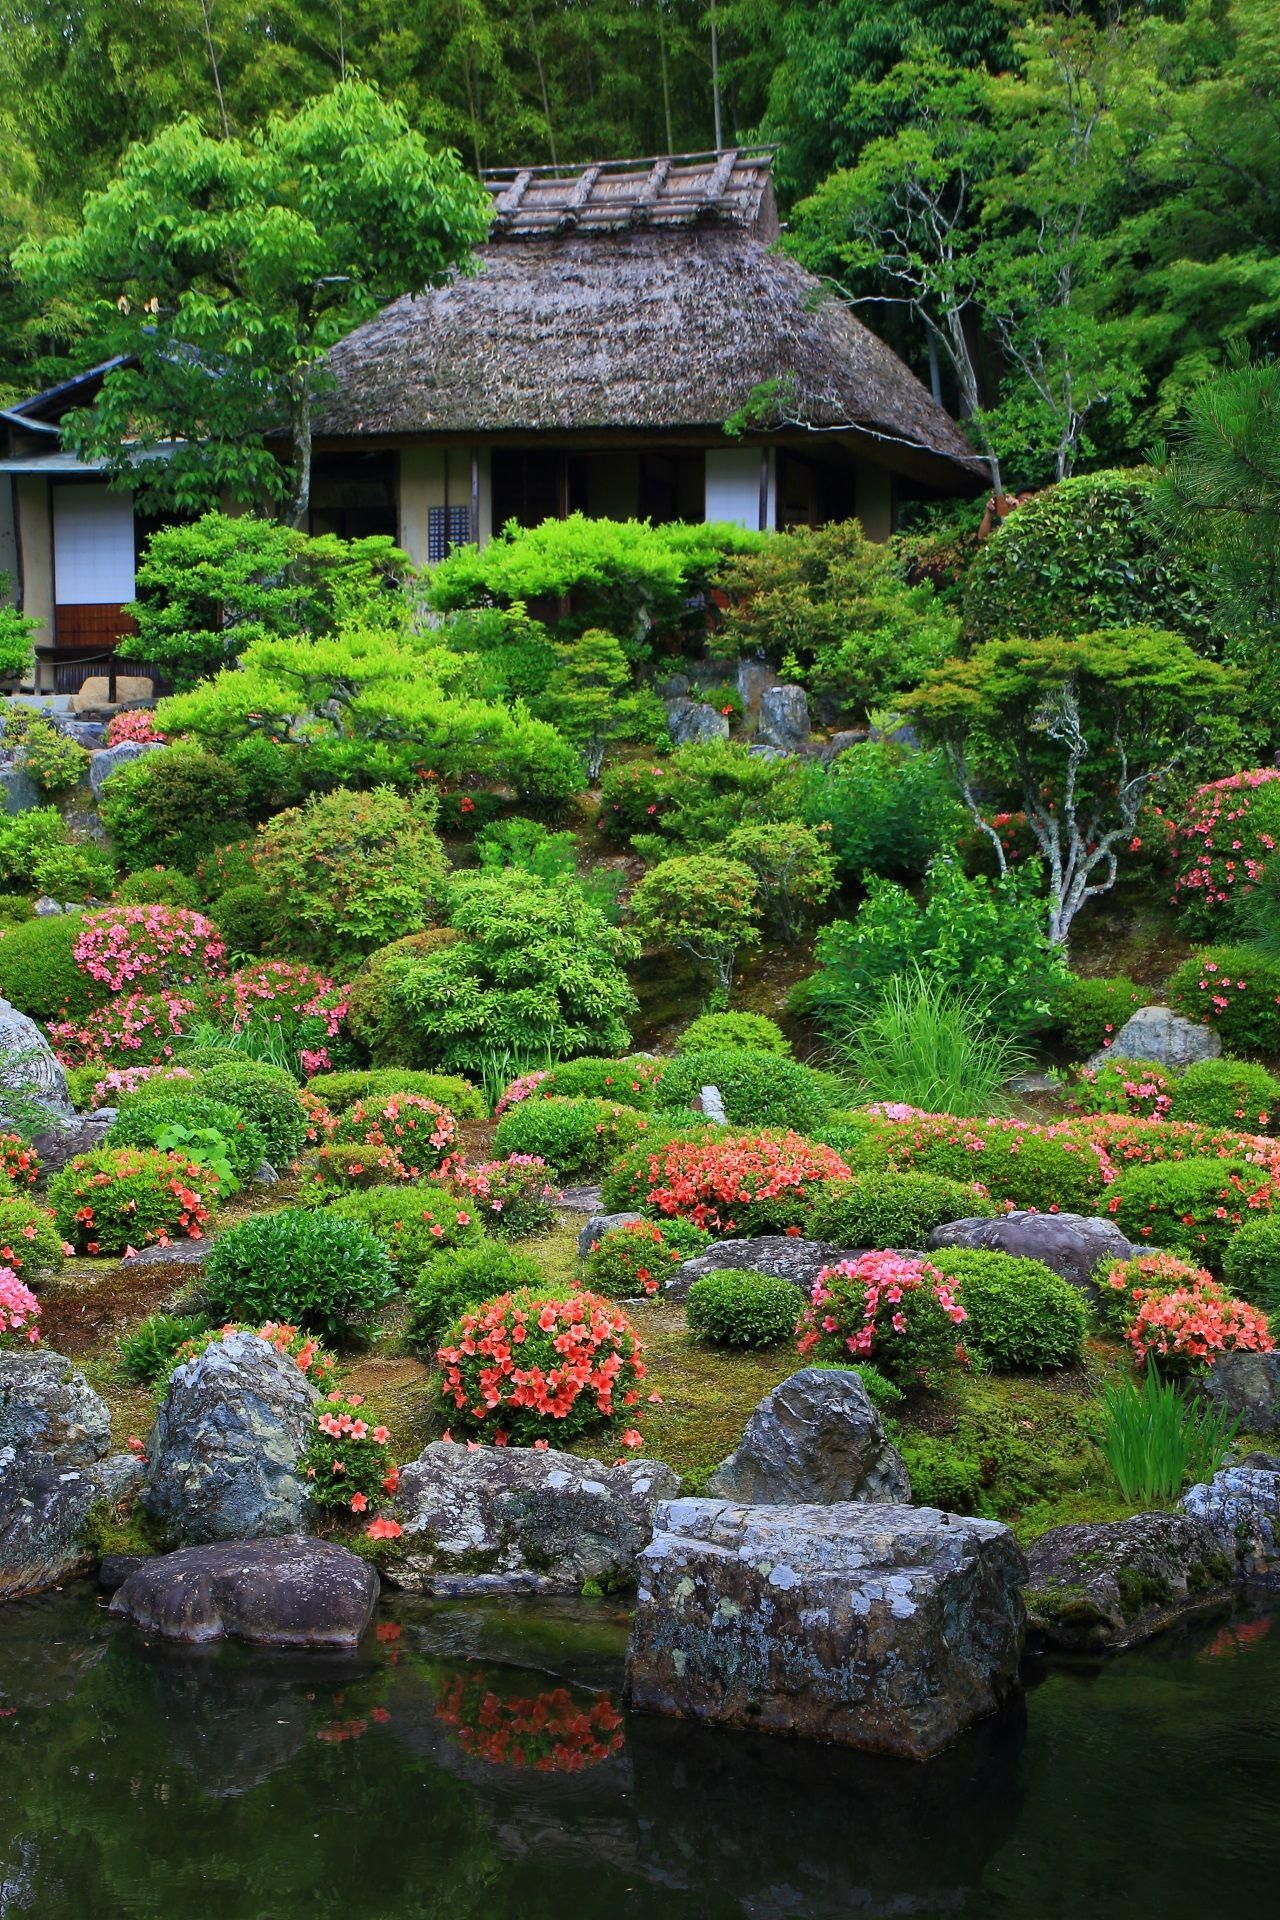 Китайский сад - ландшафт сада в китайском стиле